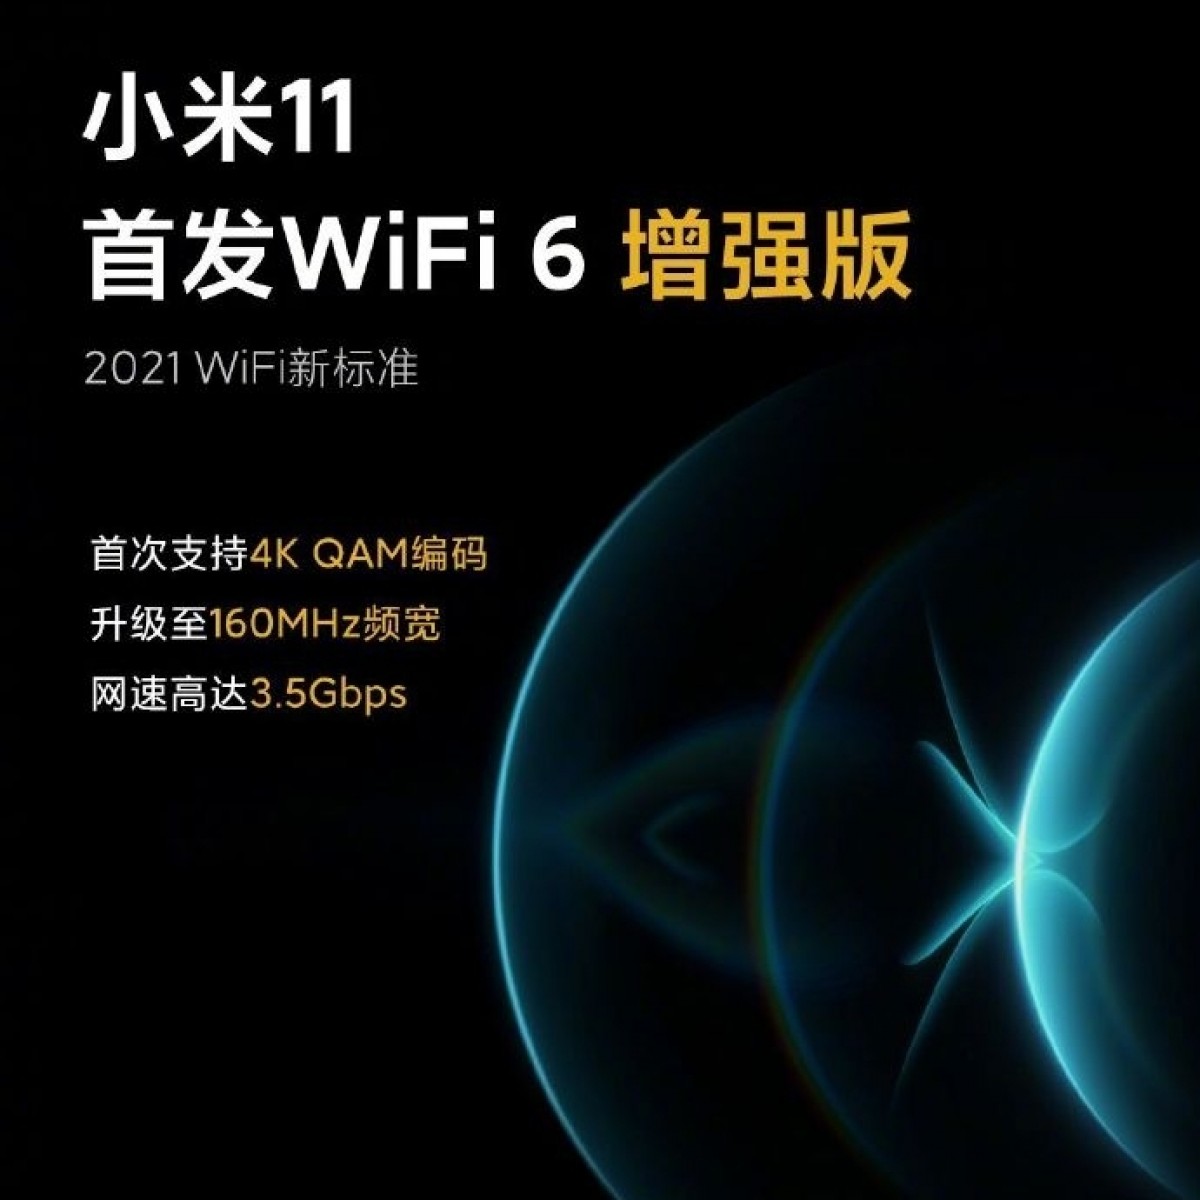 Xiaomi publie les résultats officiels Geekbench de la série Mi 11